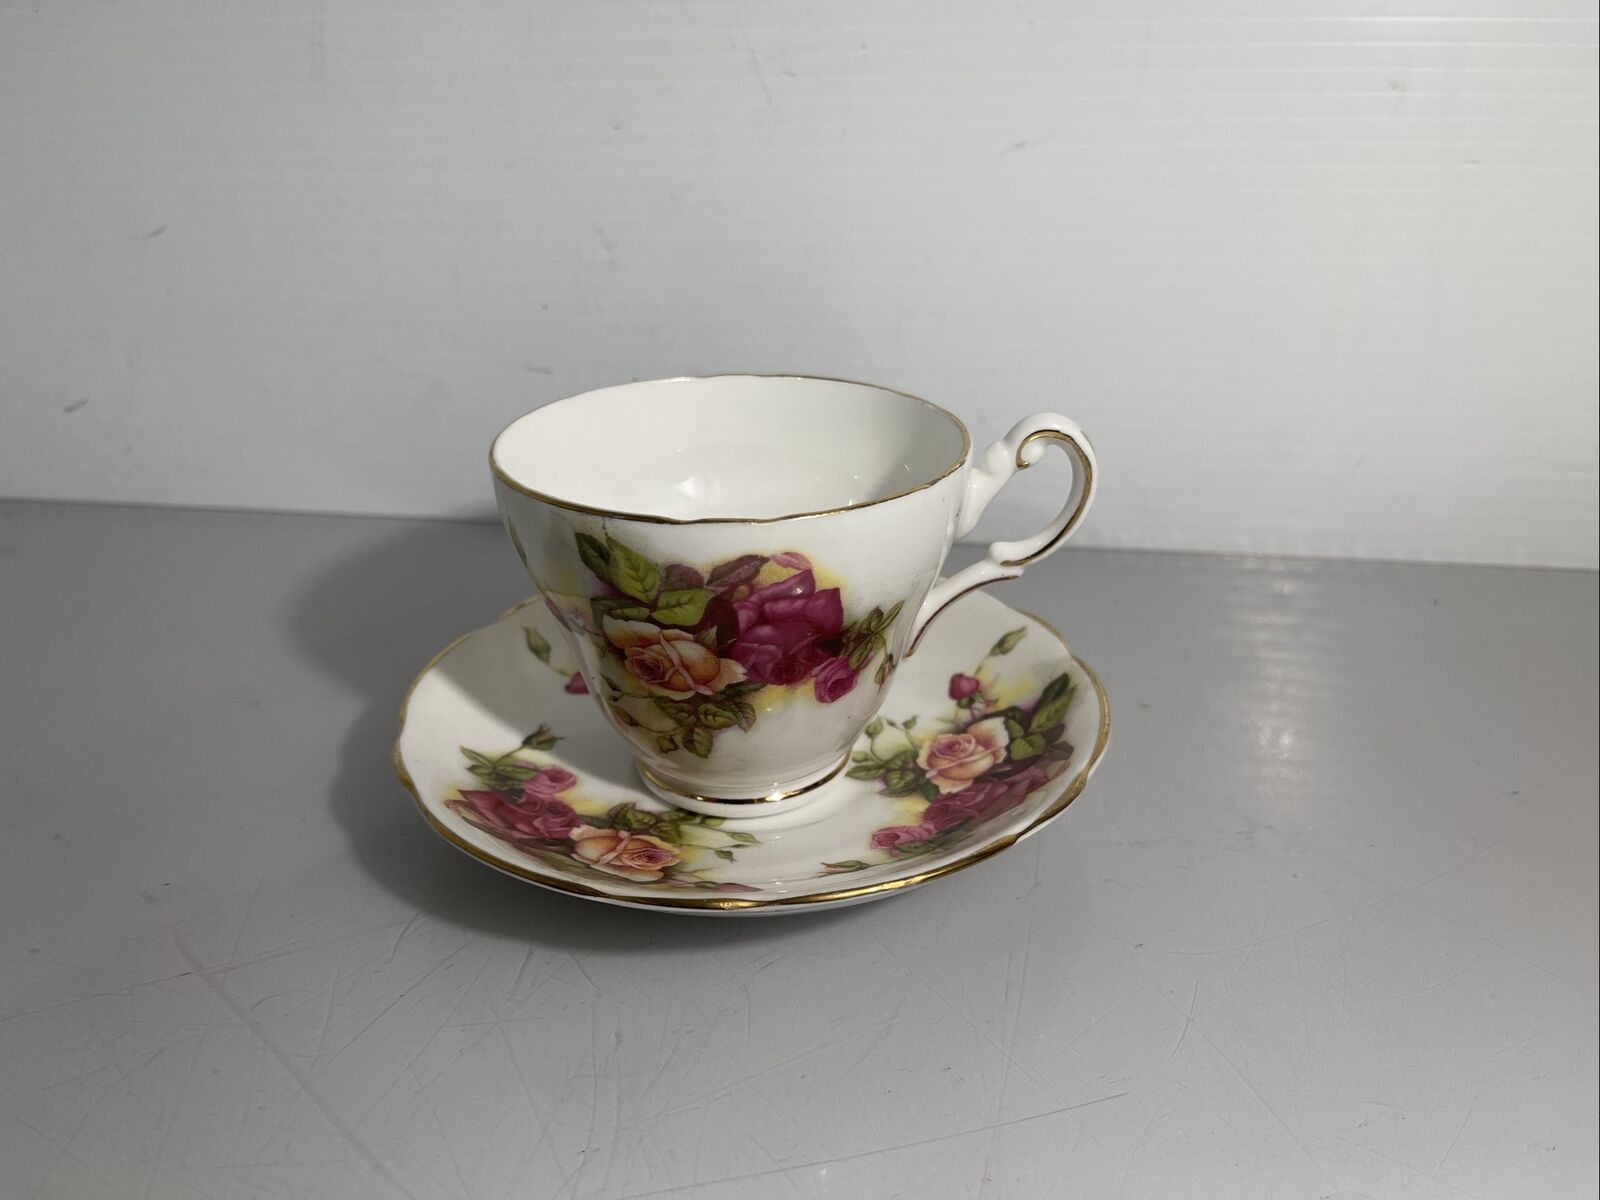 Vintage Grosvenor Jackson & Gosling Teacup & Saucer with Roses Vintage Teacup